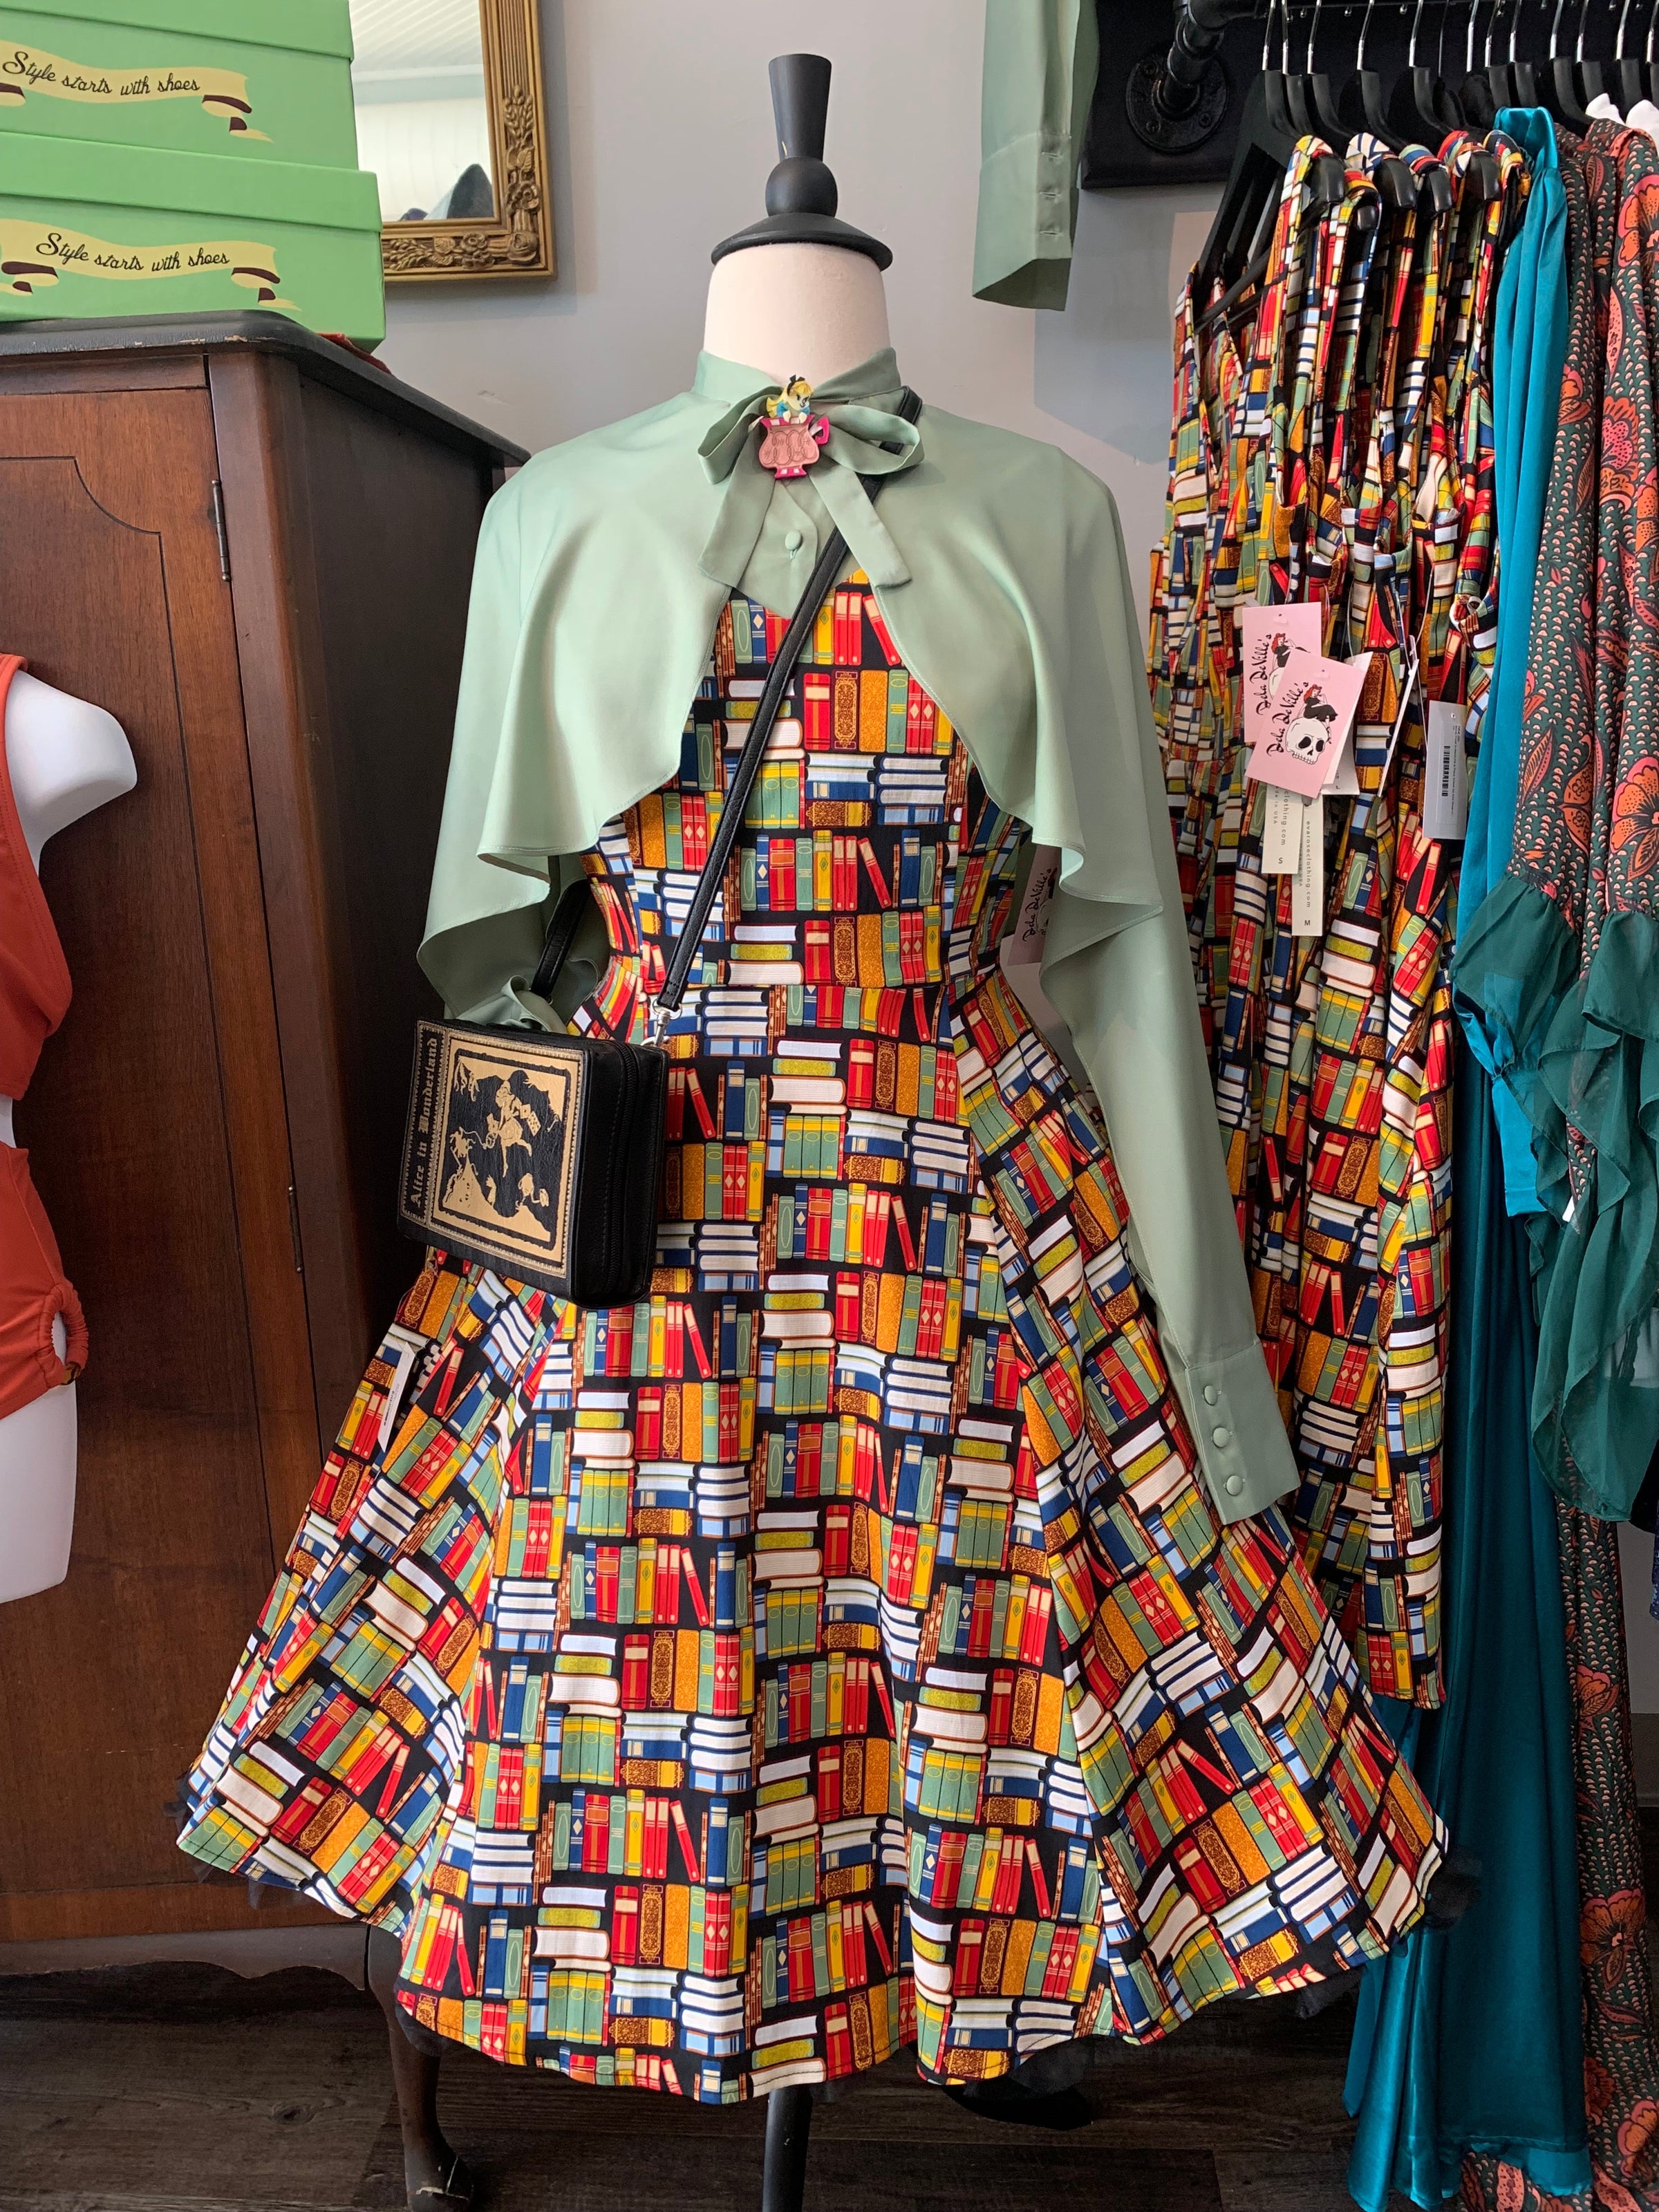 Rough ruffles: Dresses designed as a work of art – Boulder Daily Camera